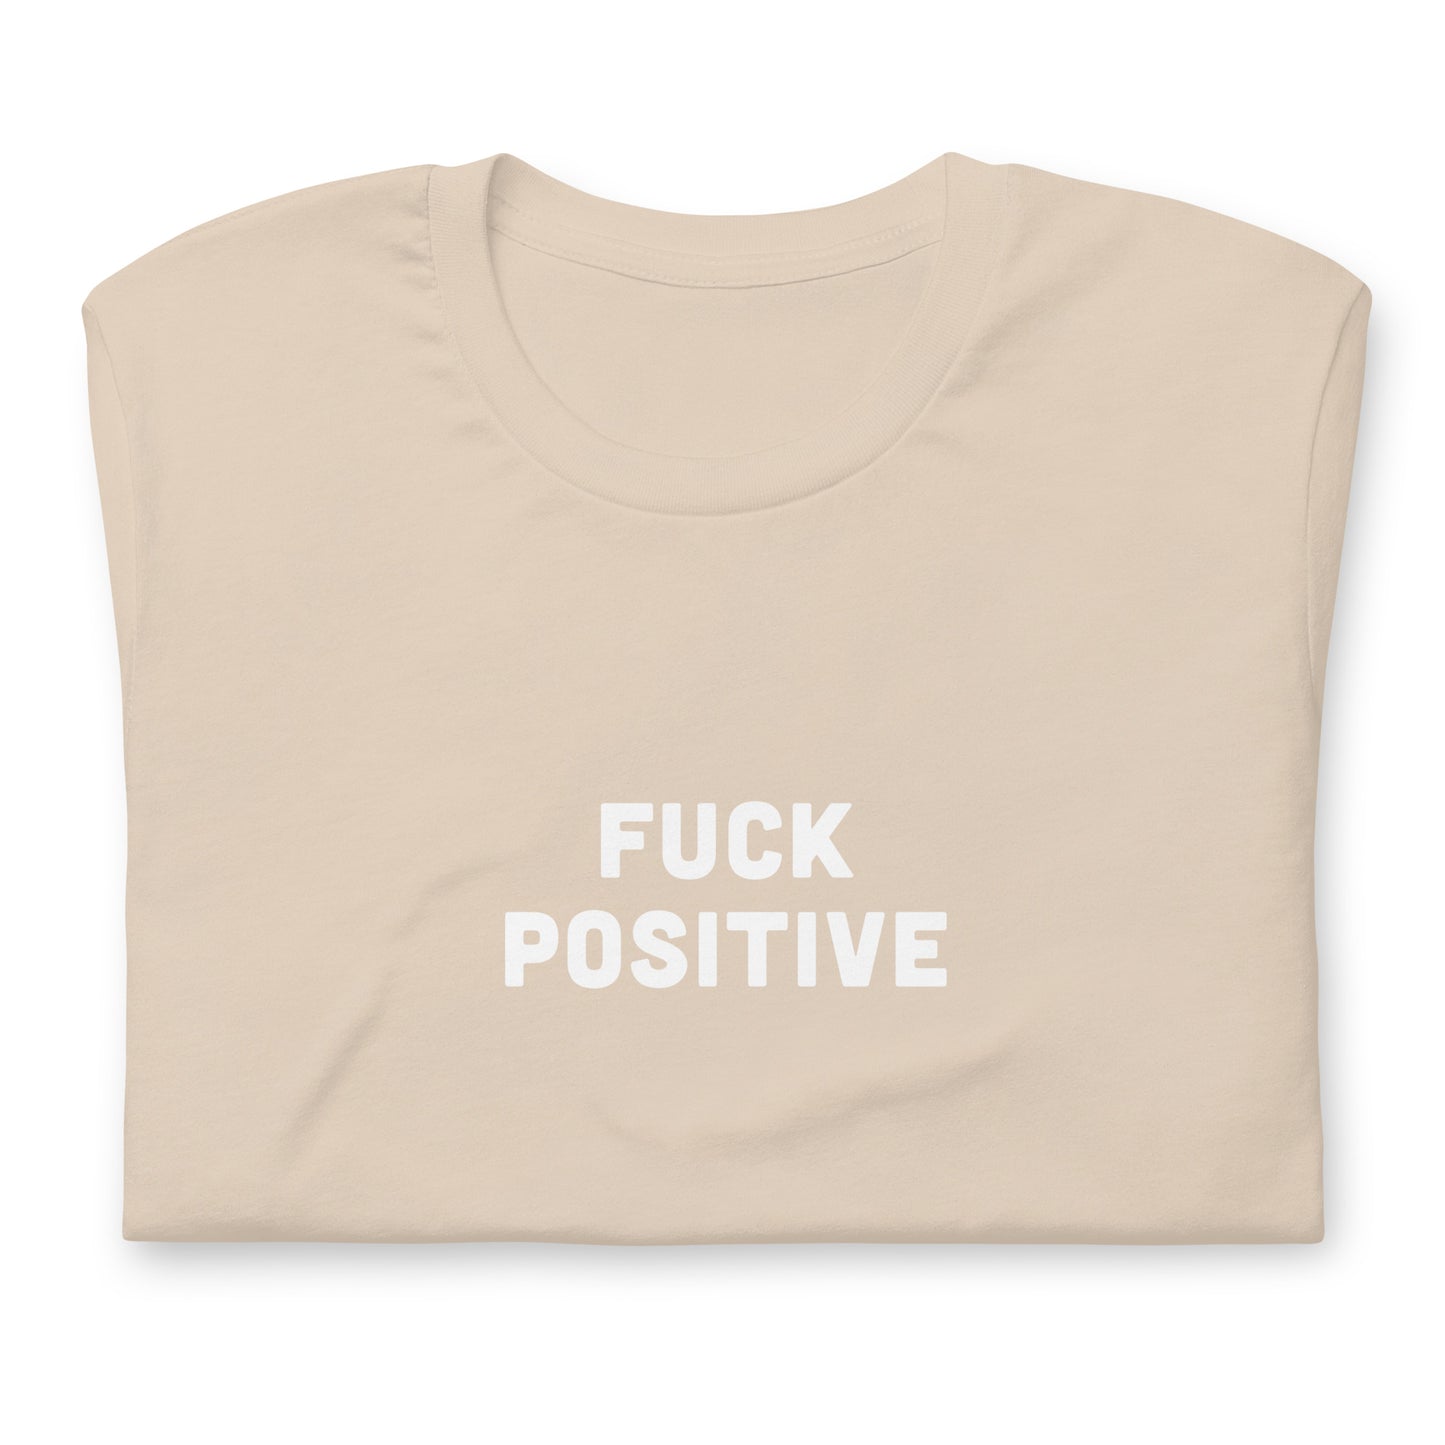 Fuck Positive T-Shirt Size L Color Asphalt